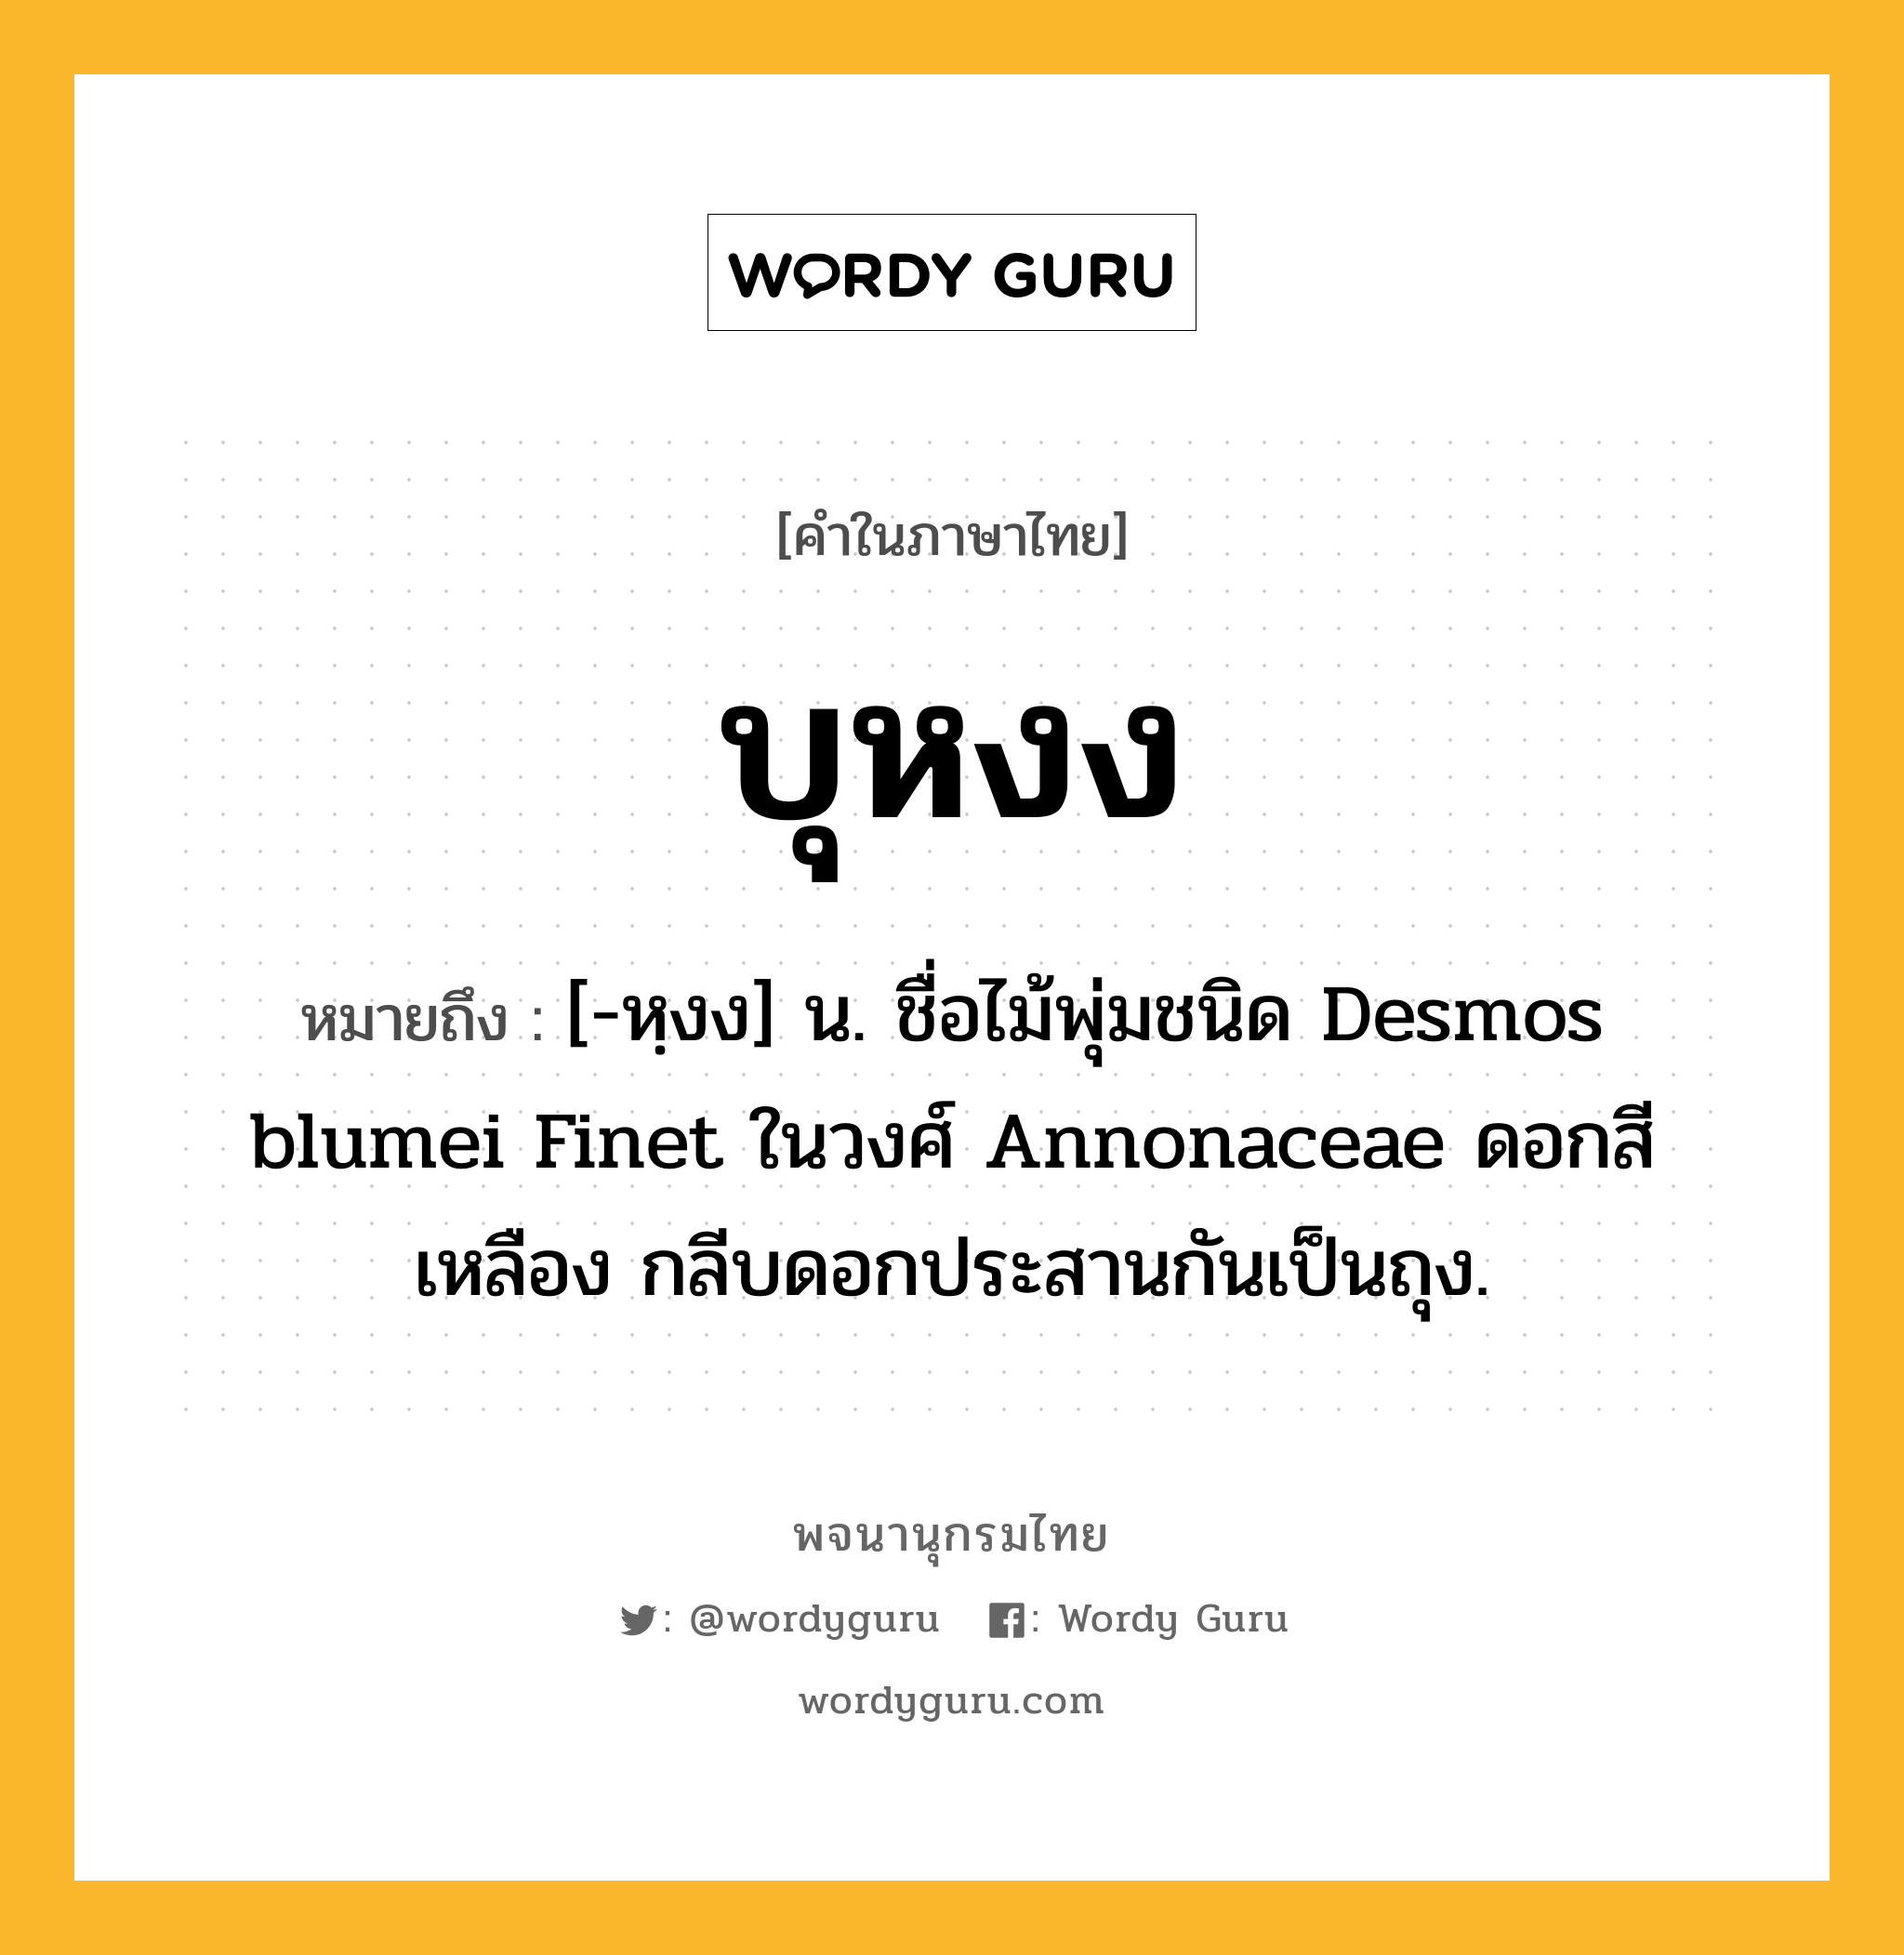 บุหงง หมายถึงอะไร?, คำในภาษาไทย บุหงง หมายถึง [-หฺงง] น. ชื่อไม้พุ่มชนิด Desmos blumei Finet ในวงศ์ Annonaceae ดอกสีเหลือง กลีบดอกประสานกันเป็นถุง.